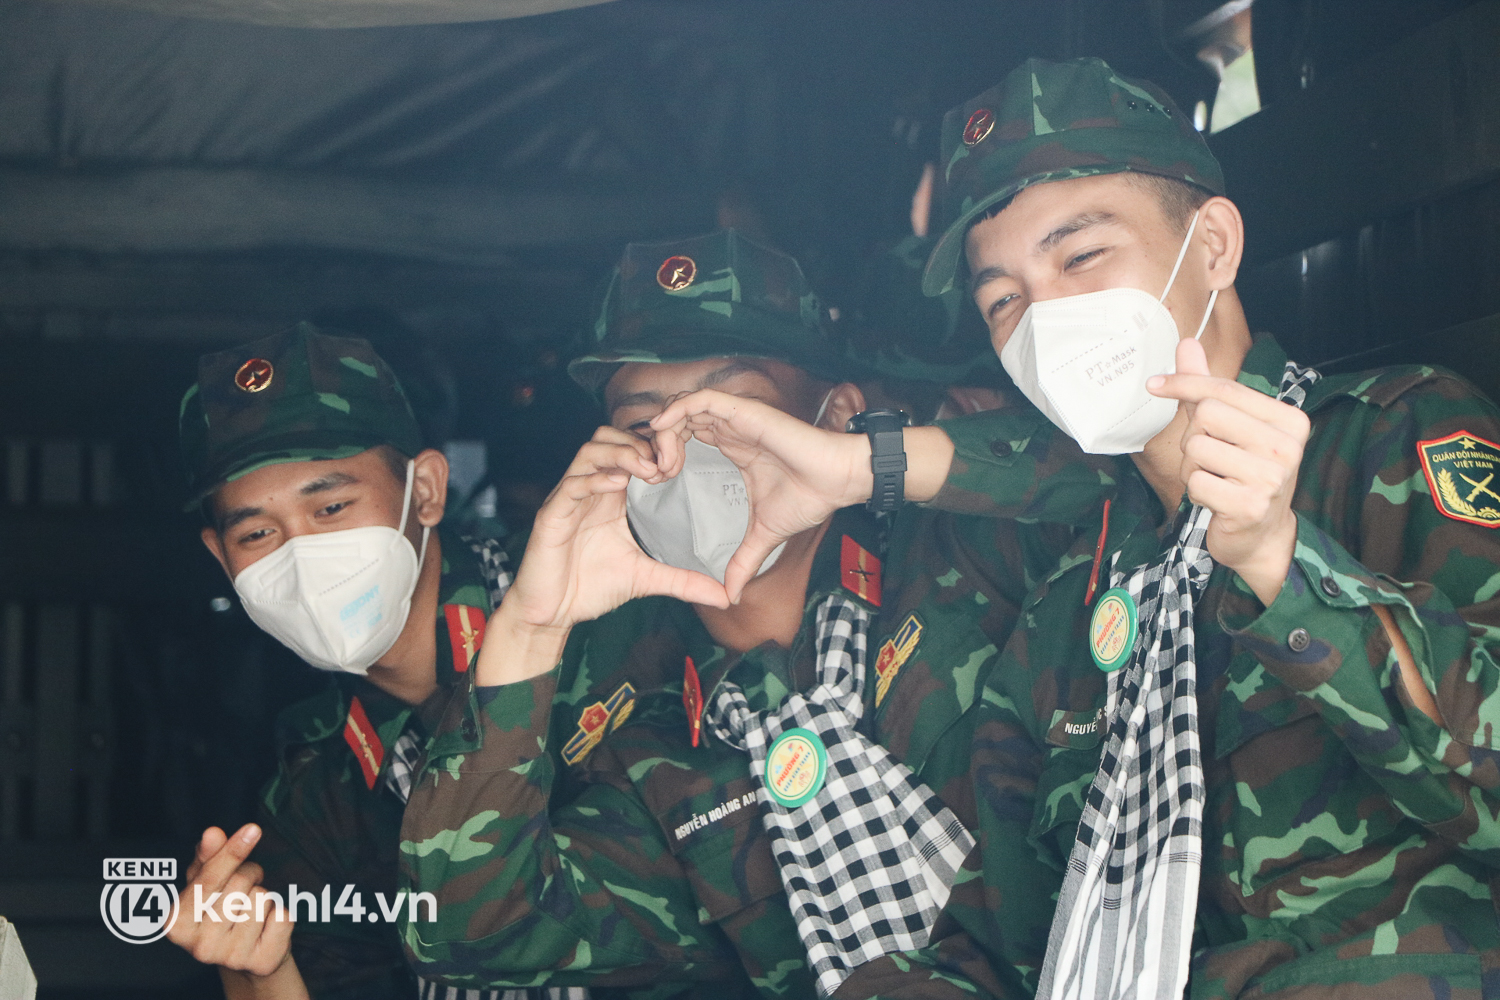 Chùm ảnh: Bộ đội bịn rịn vẫy tay tạm biệt người dân để trở về sau 2 tháng hỗ trợ TP.HCM chống dịch - Ảnh 12.